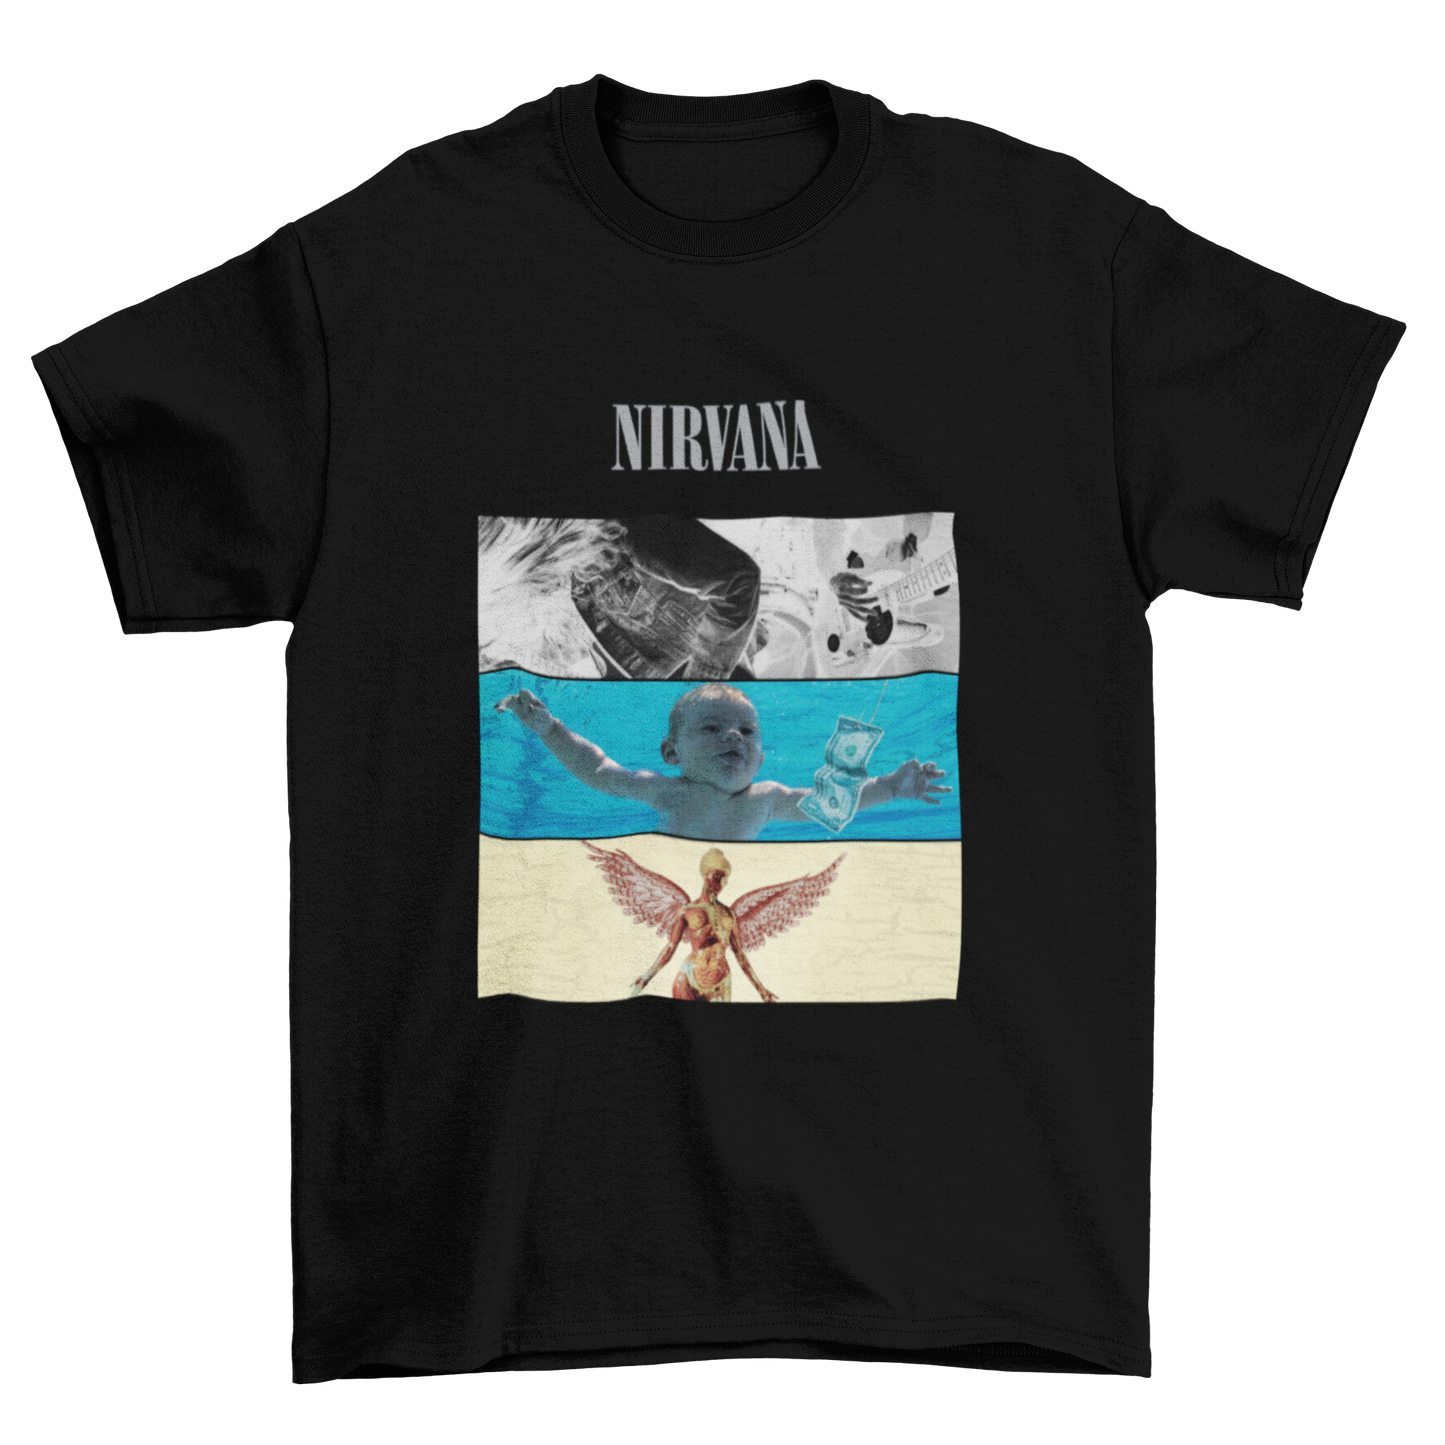 Nirvana (Album Cover Tee)